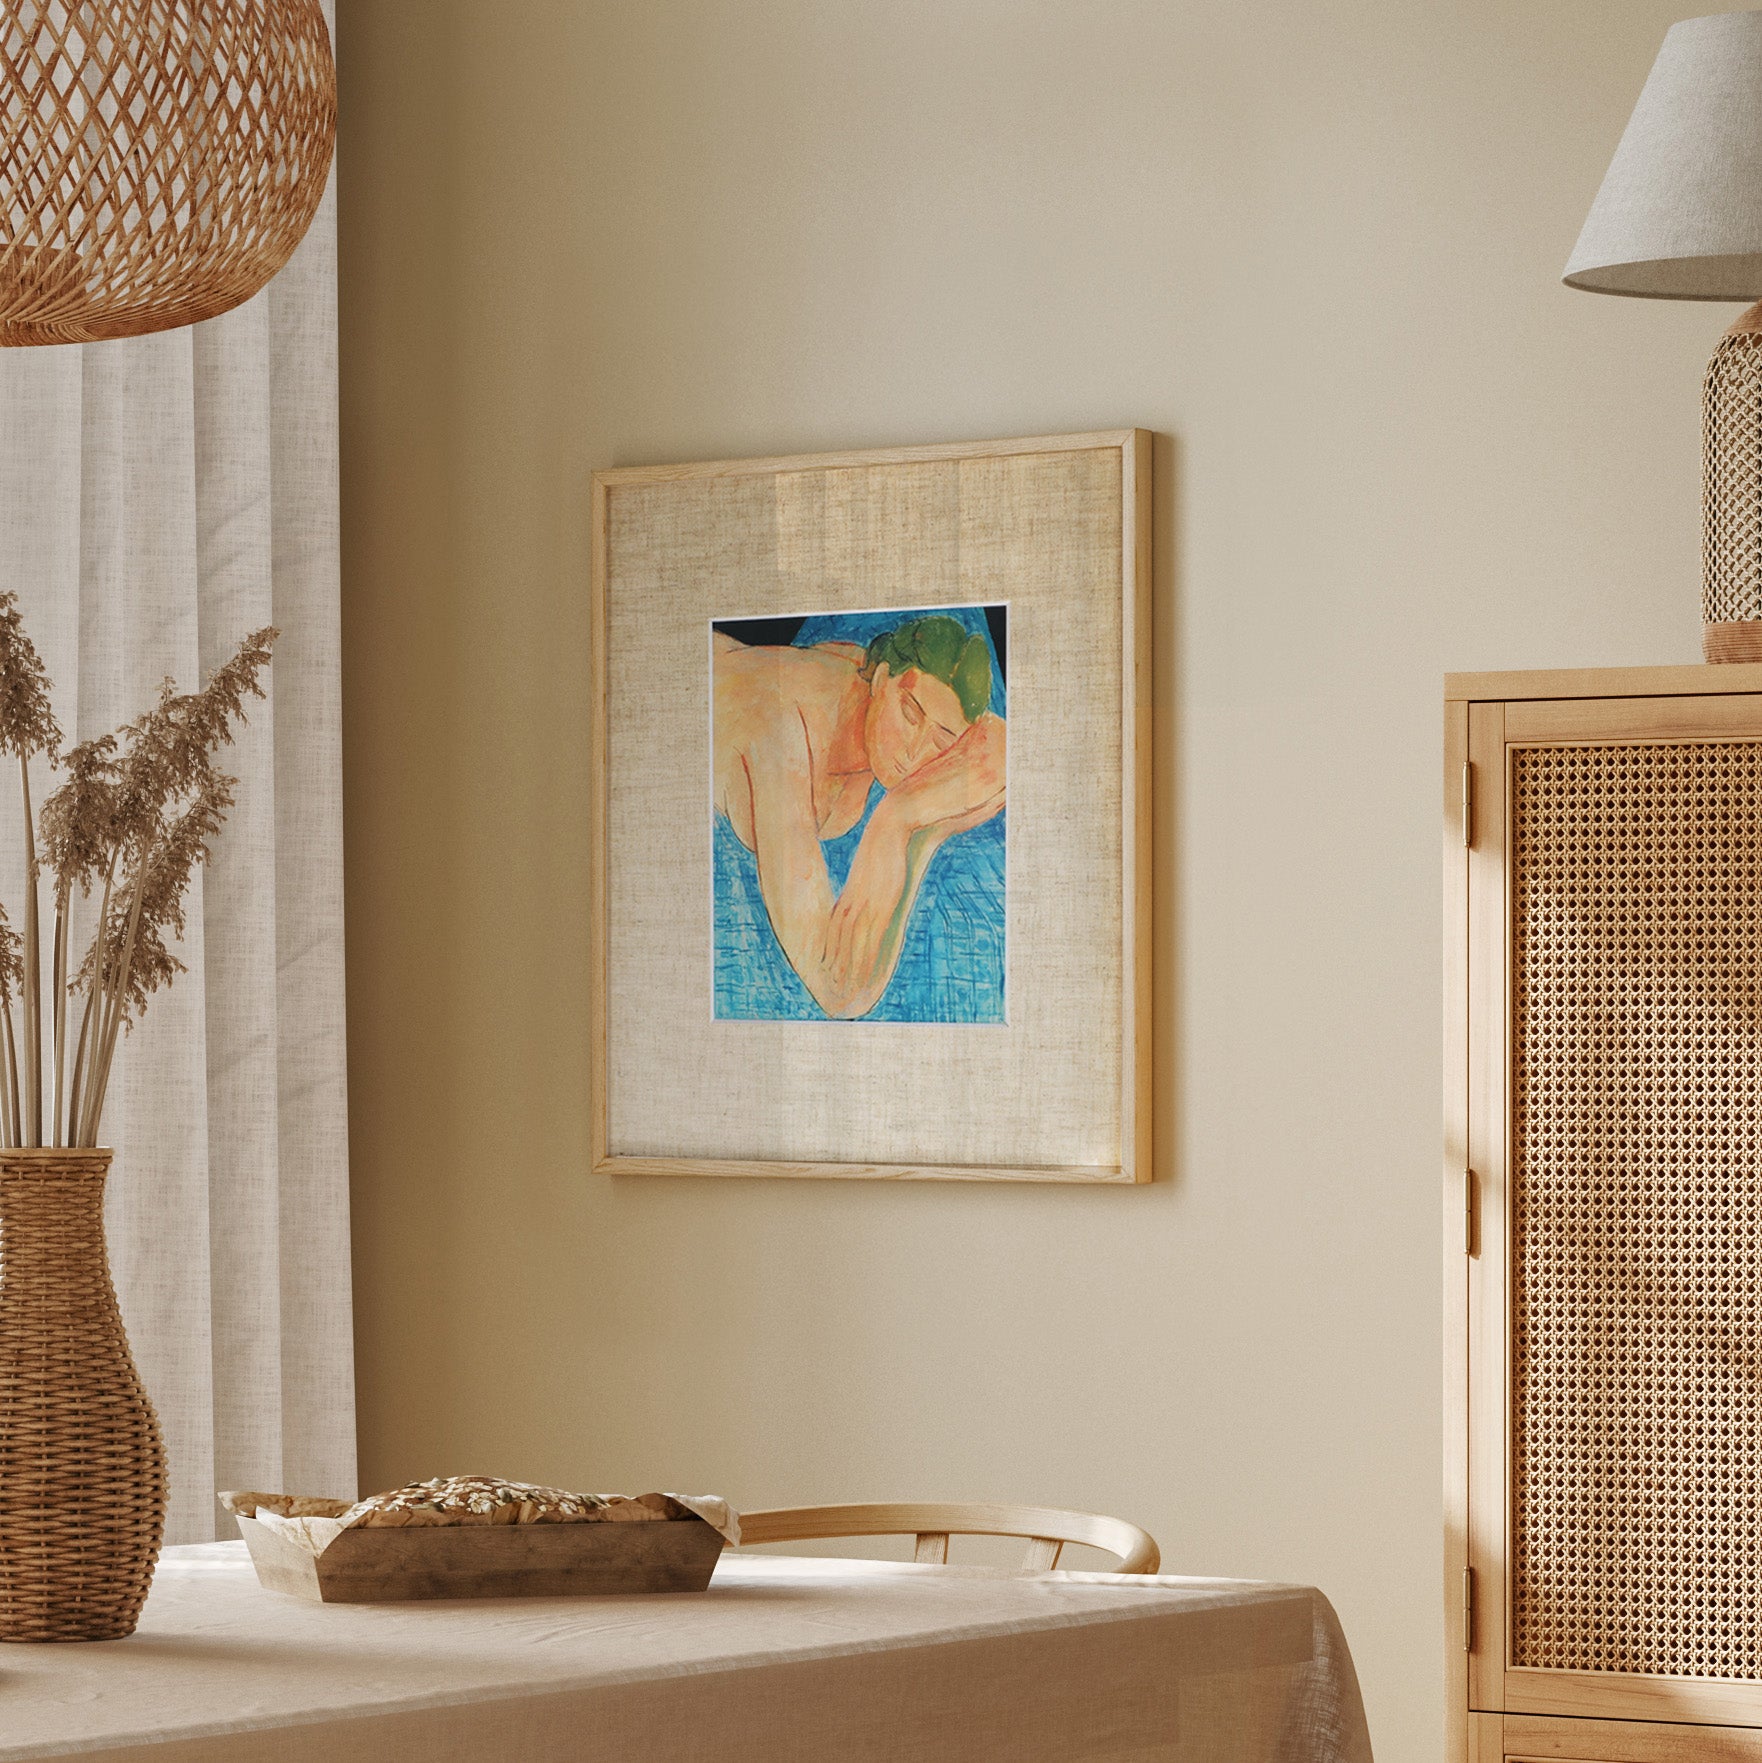 アンリ・マティス 「夢 1935」アートポスター（フレーム付き） / Henri Matisse “La Réve 1935” Art Frame